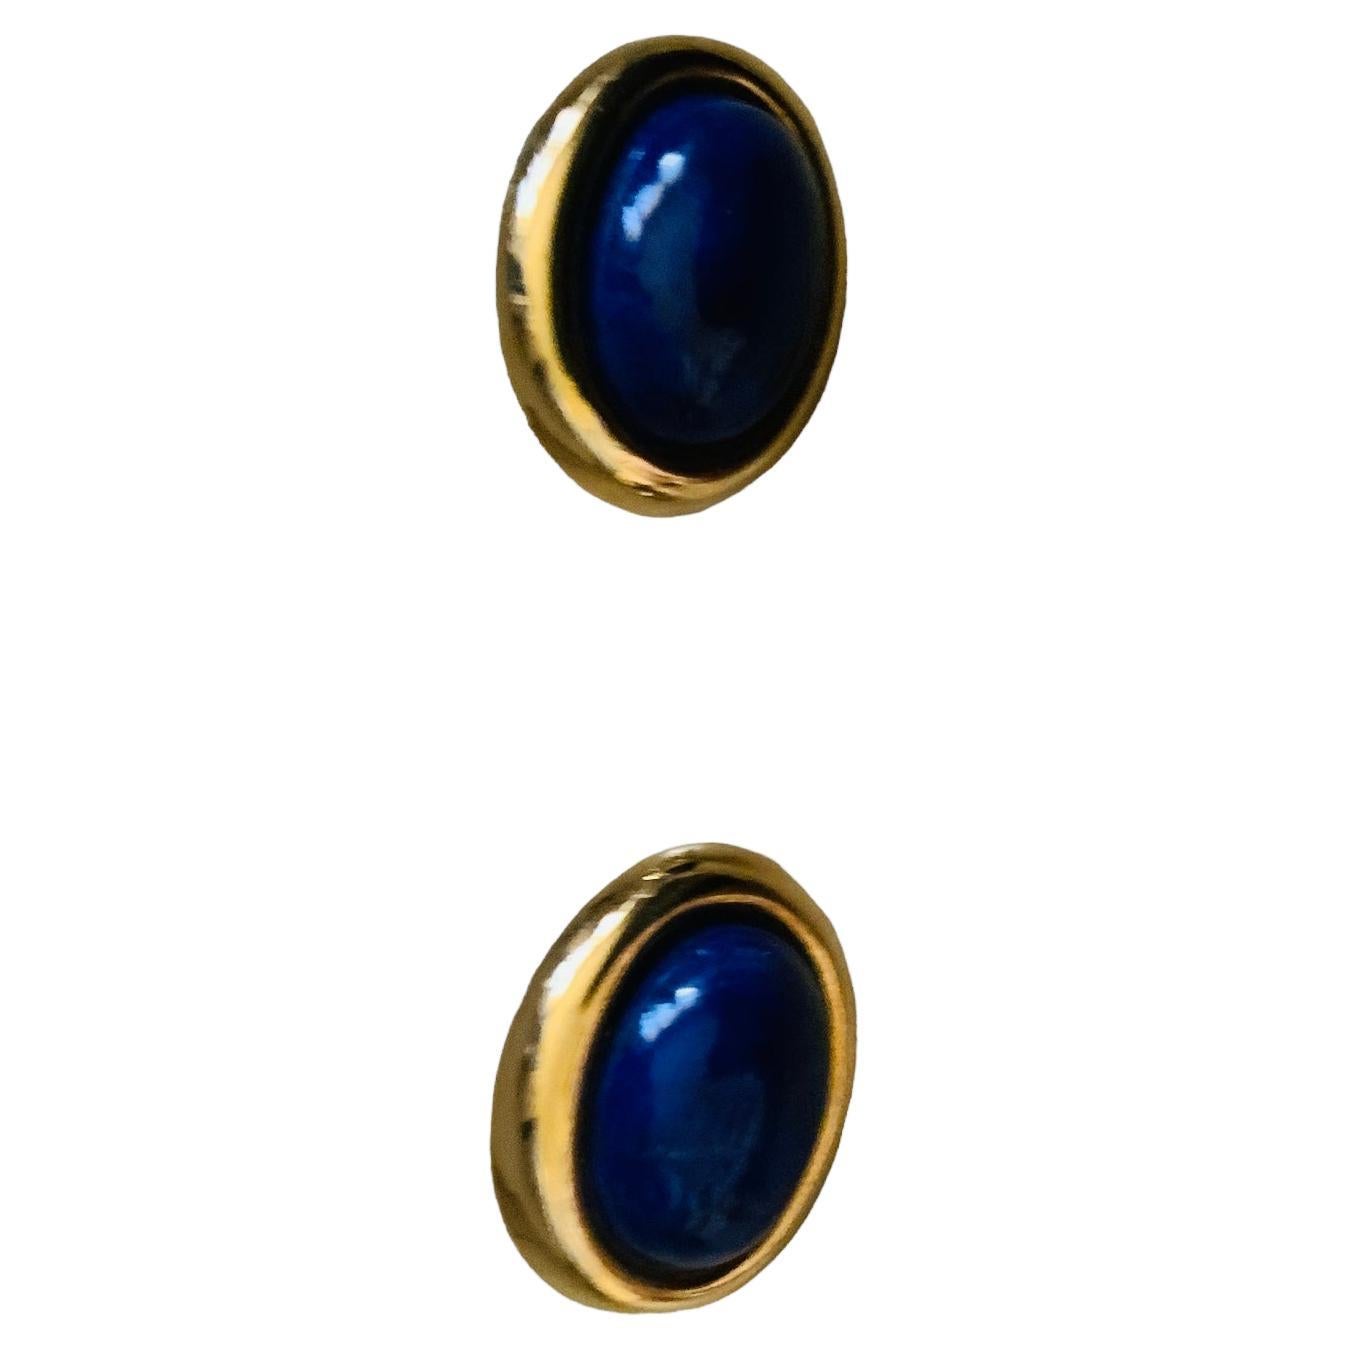 Il s'agit d'une paire de boucles d'oreilles en or jaune 14K et lapis-lazuli. Il représente un cabochon de Lapis-lazuli de forme ovale monté dans un halo ovale en or 14K. Elles sont poinçonnées 14k au dos.